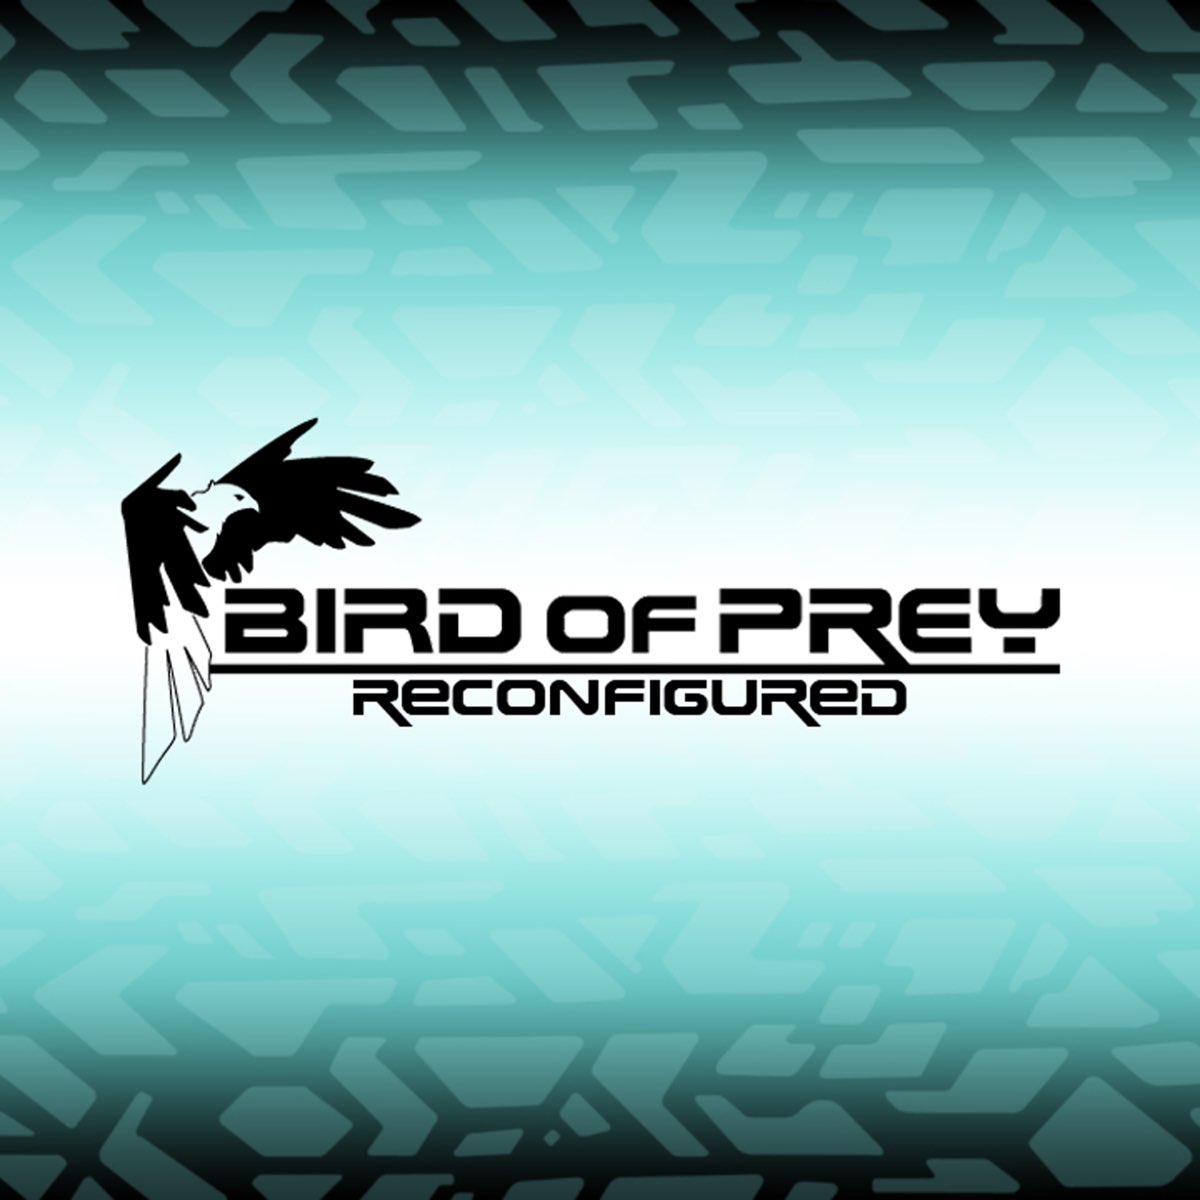 Birds of Prey. Bird of Prey / бёрд оф Прэй (светлое нефильтрованное неосветленное). Пиво "Bird of Prey" ("Берд оф Прэй") светлое нефильтр. Неосветл. Непаст..